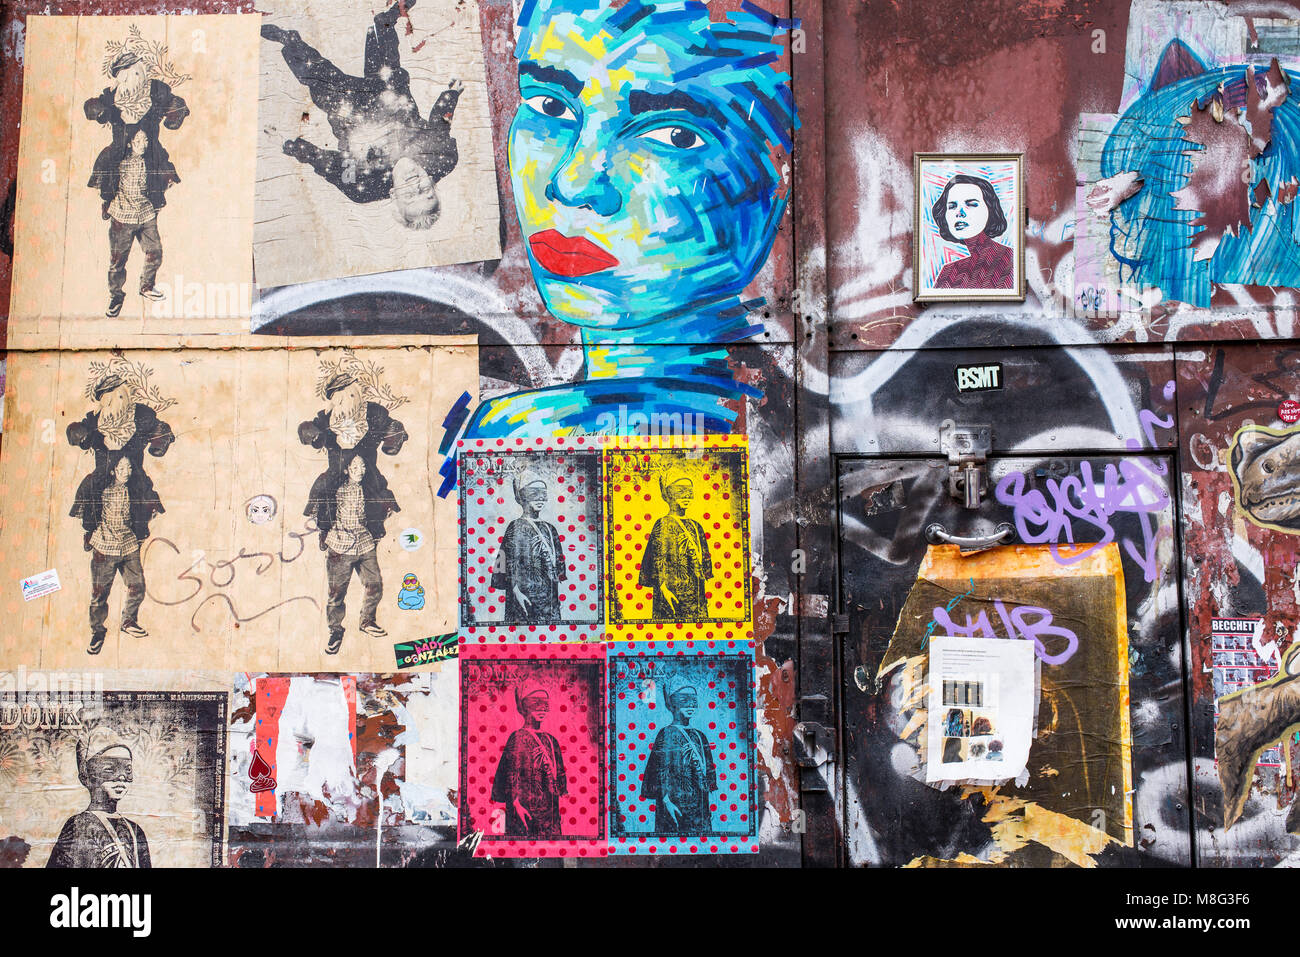 Vieille porte couverts en autocollants et street art peintures murales dans la rue Commerciale, Spitalfields, Shoreditch, East London, UK Banque D'Images